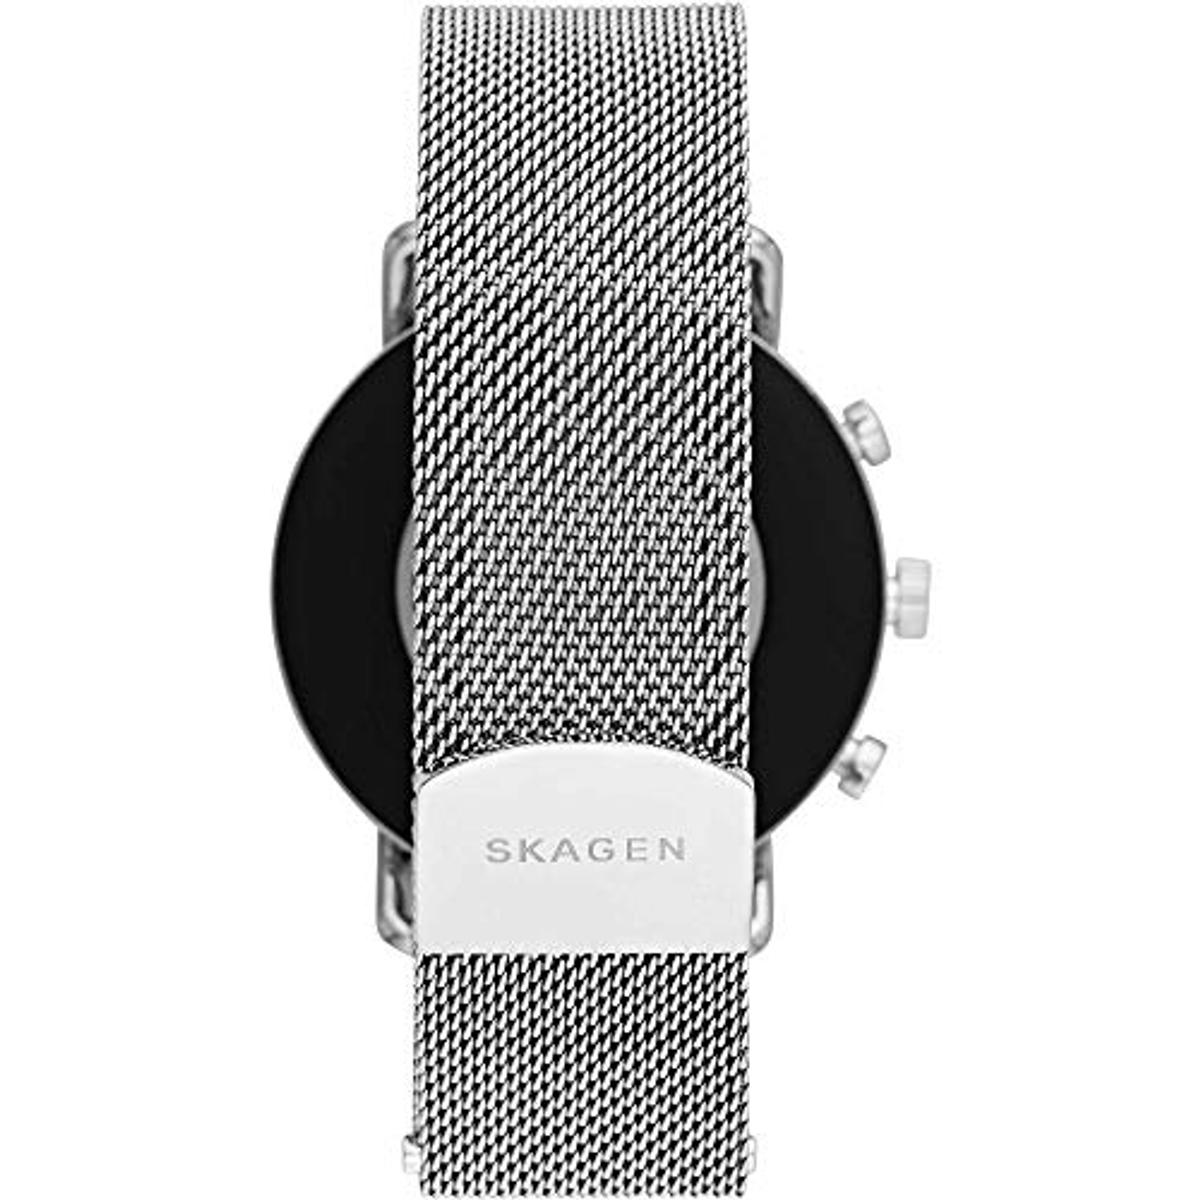 SKAGEN Smartwatch Skagen SKT5102 Silver/Black Edelstahl Smartwatch silicone, mm, 185